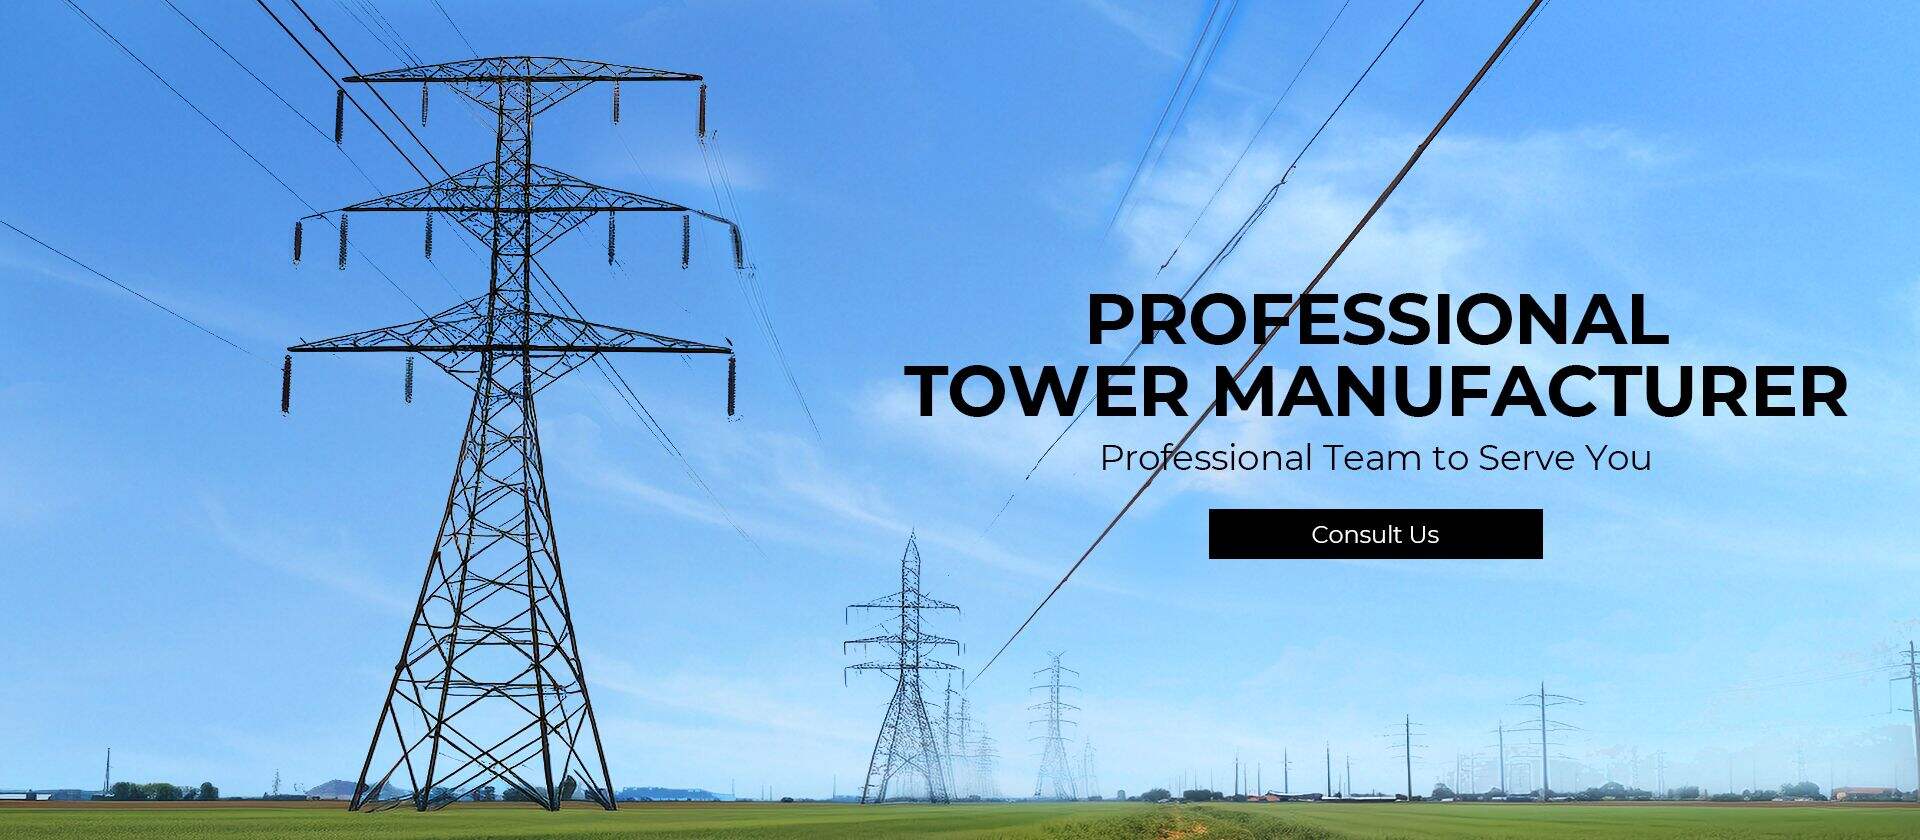 Xinhang Torre Technology Co., Ltd.